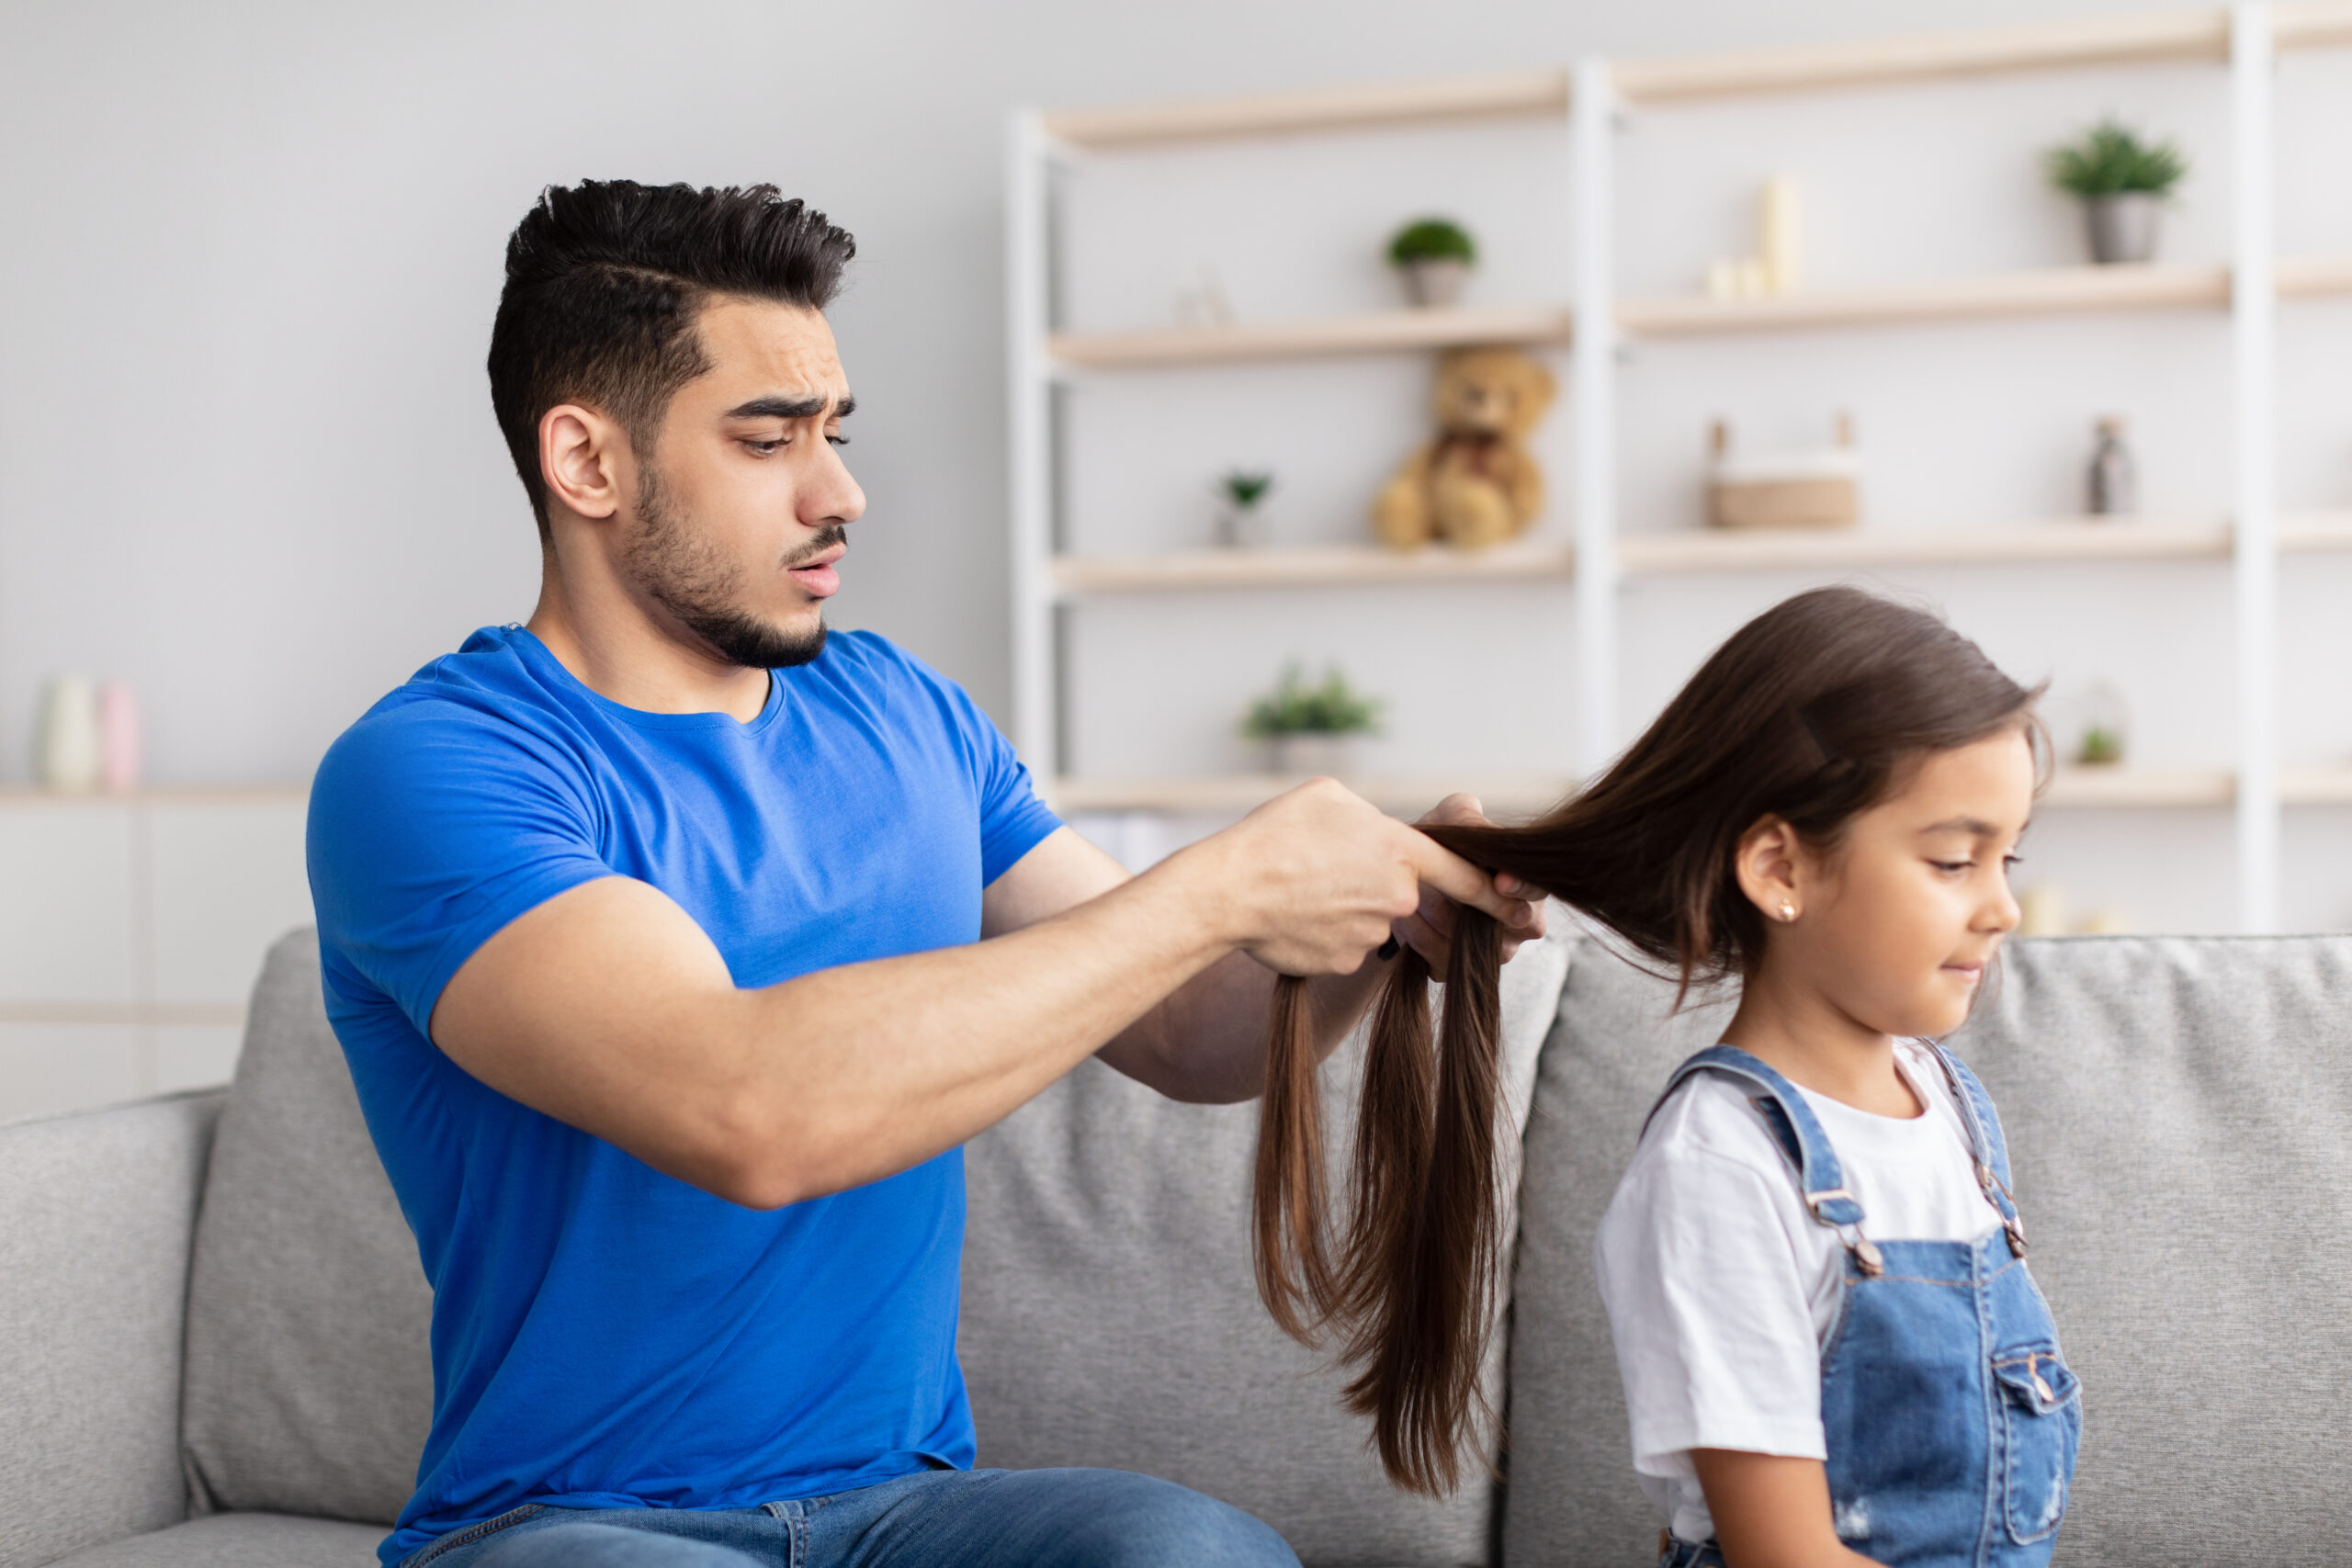 Pai ameaça cortar o cabelo da filha por sua recusa em penteá-lo todos os dias